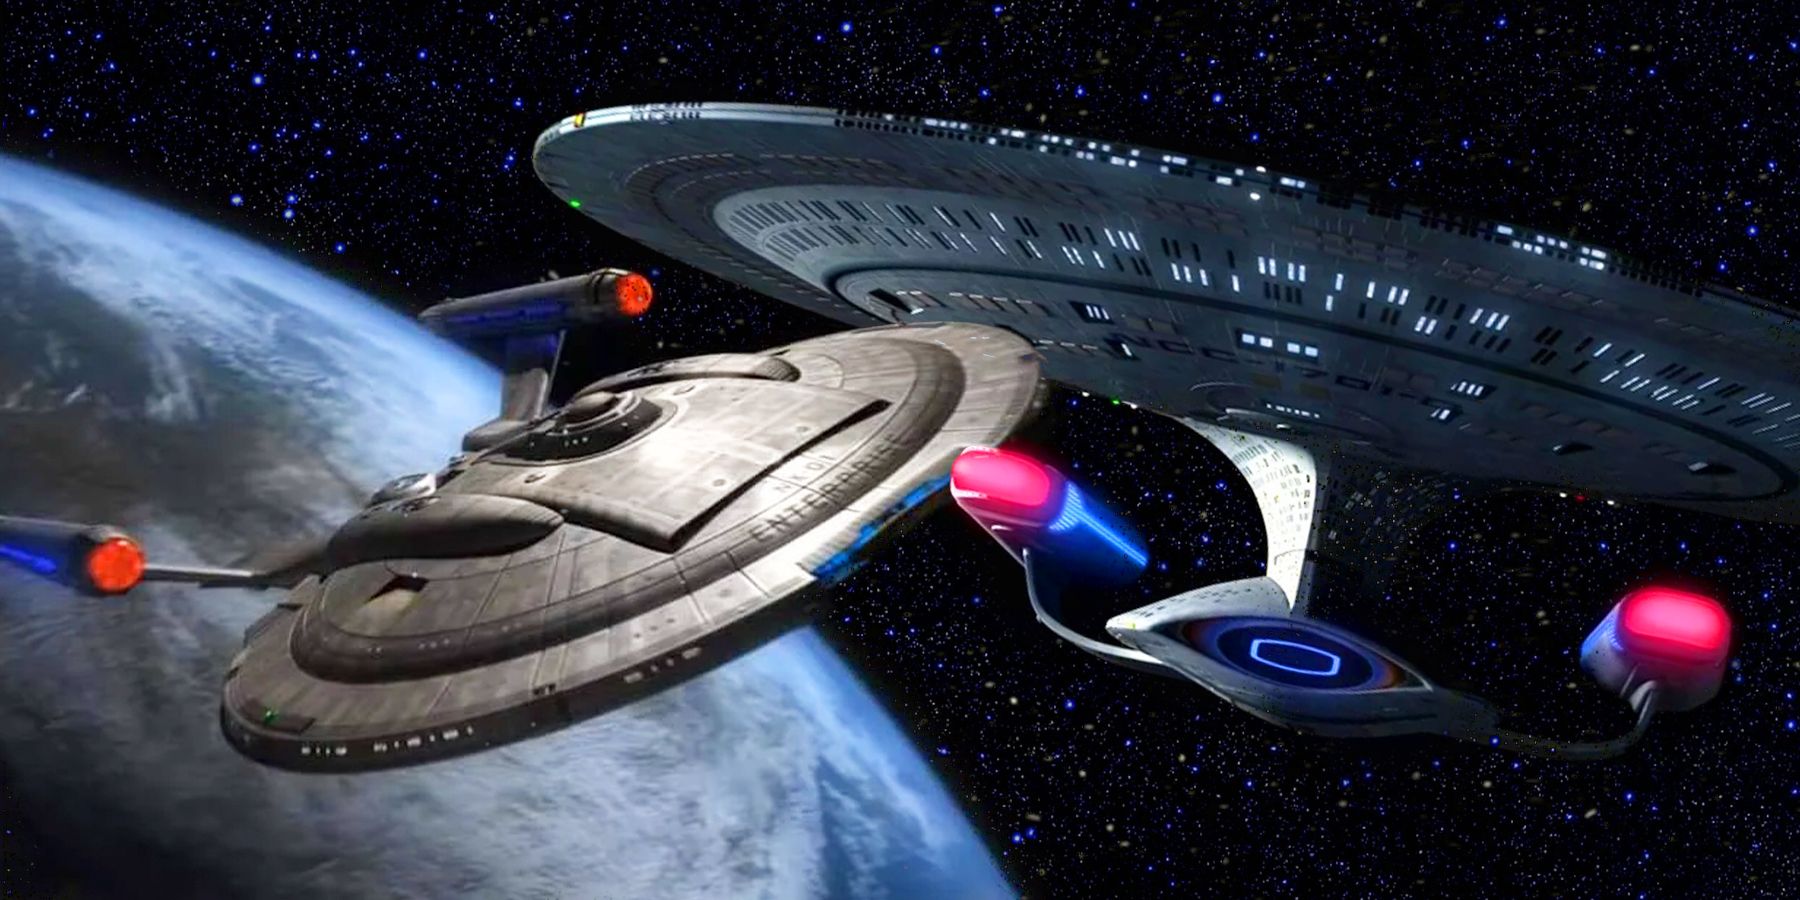 The Enterprise NX-01 from Star Trek: Enterprise and Enterprise C from Star Trek